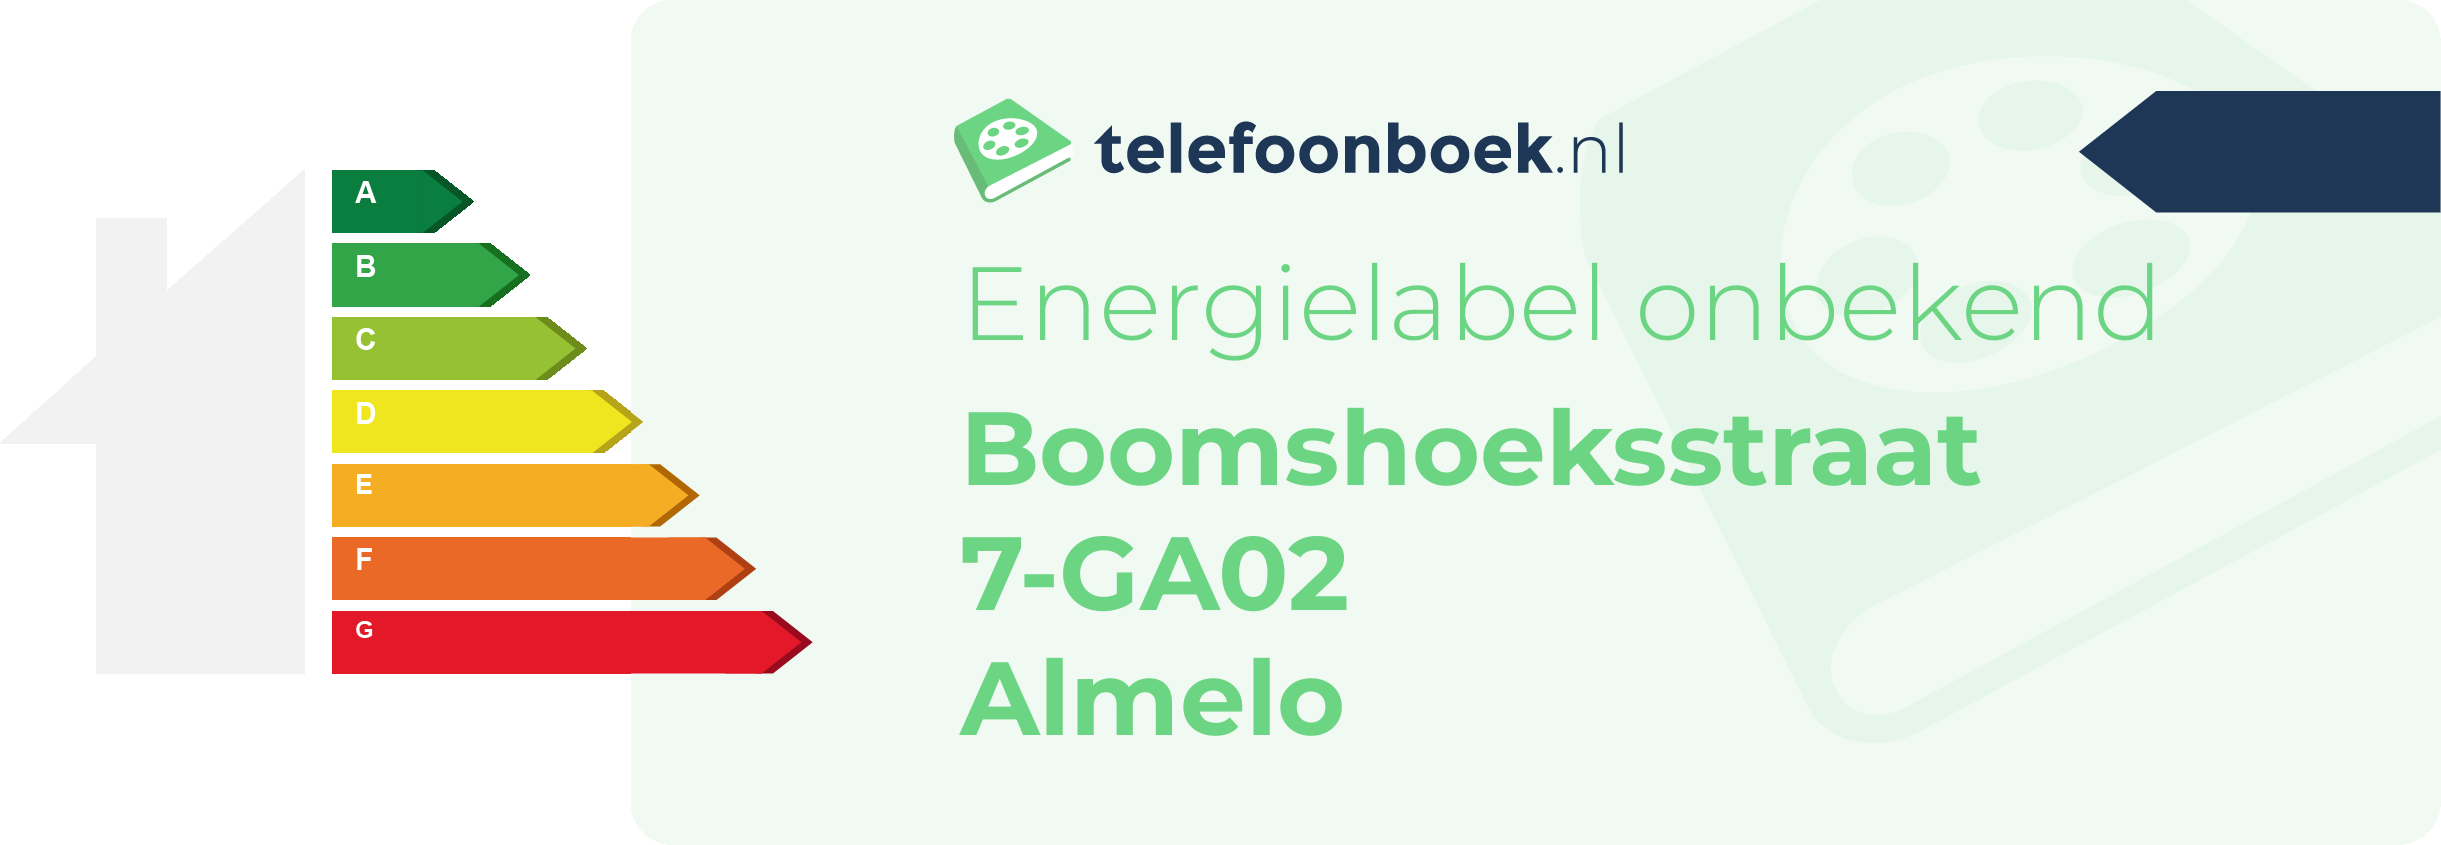 Energielabel Boomshoeksstraat 7-GA02 Almelo